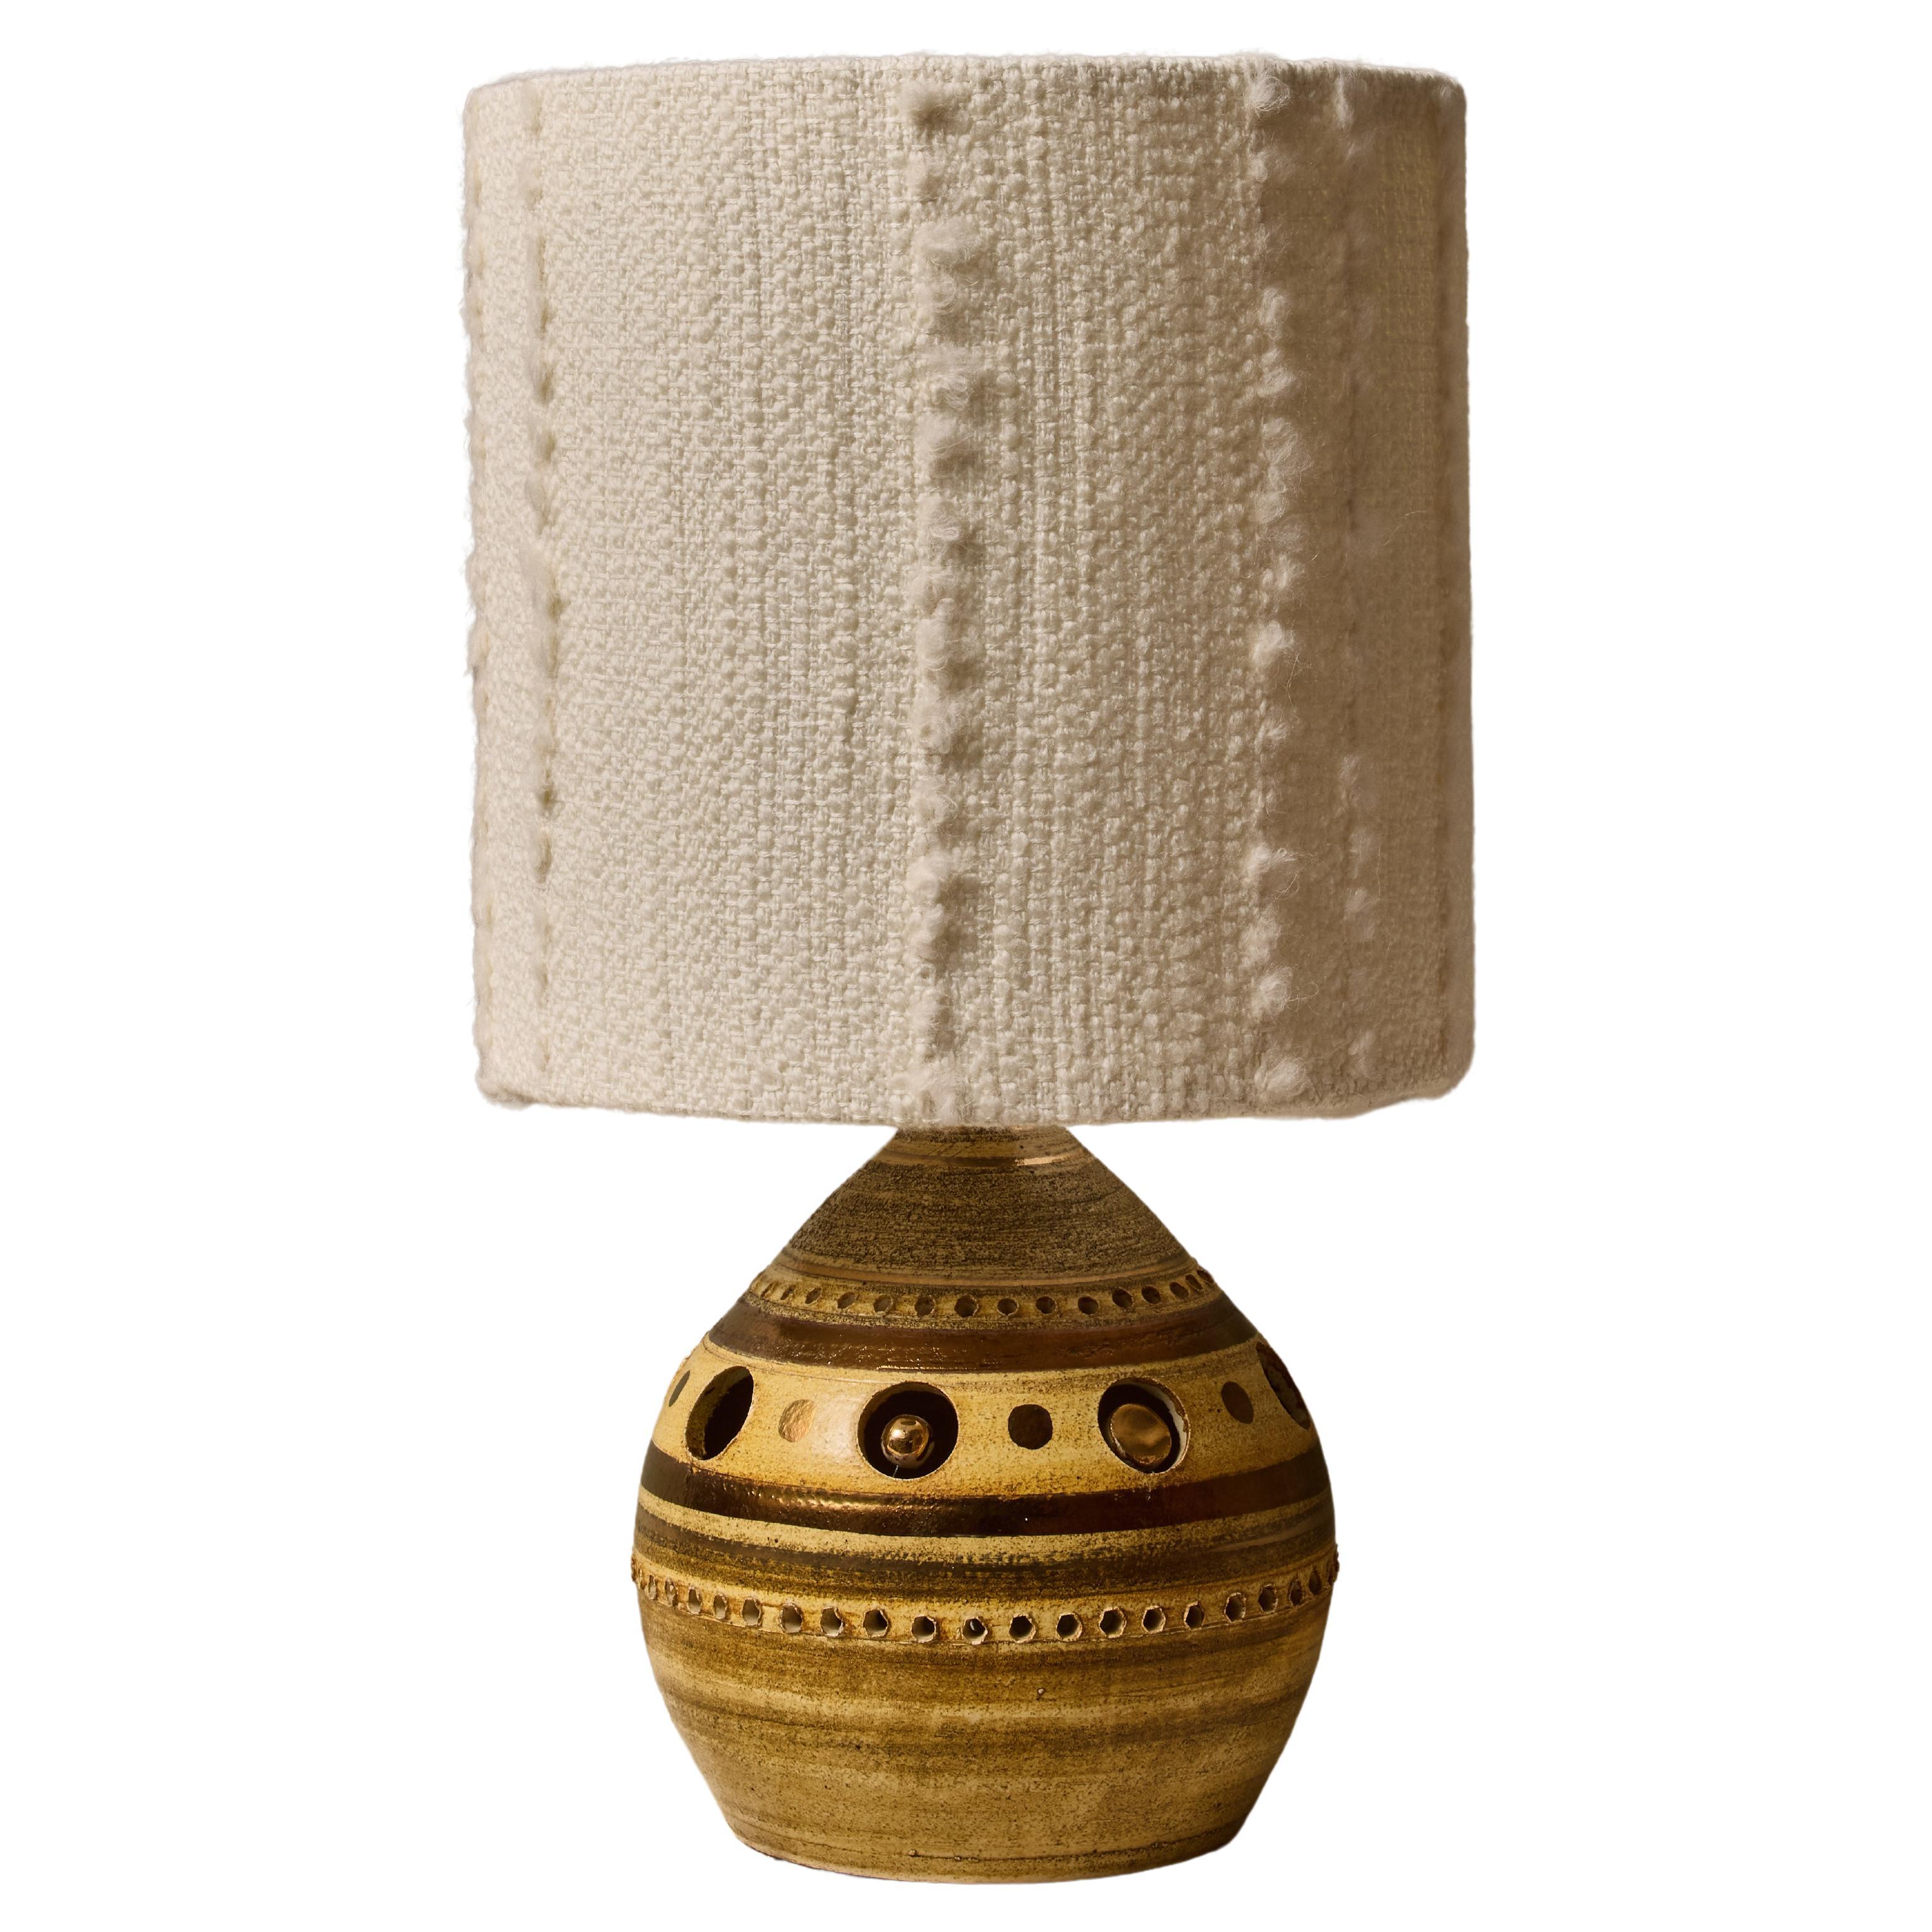 Georges Pelletier Runde Tischlampe aus Keramik, grün, braun und gold glasiert